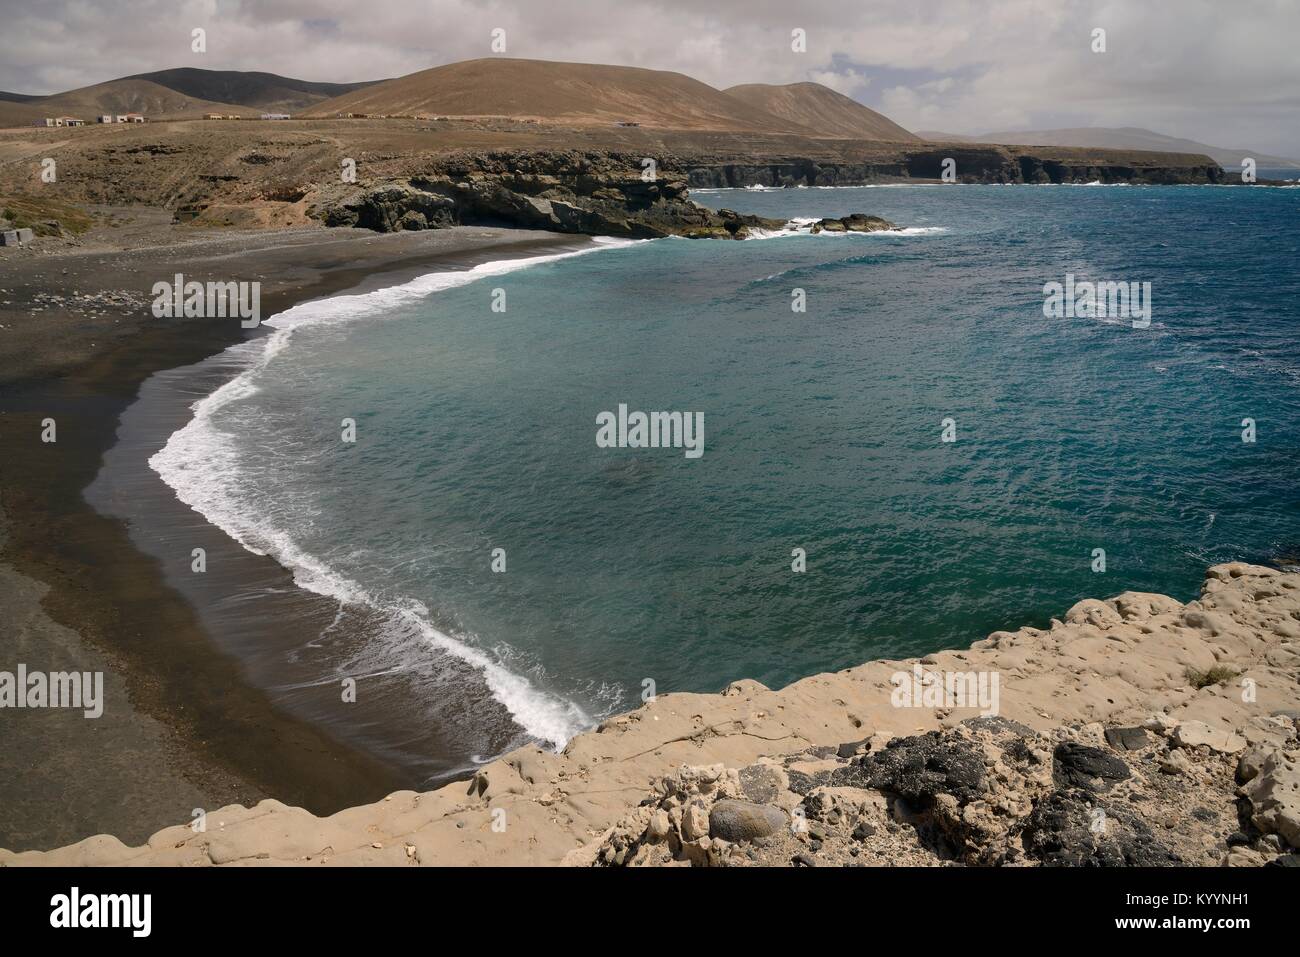 Aperçu de Playa de los Muertos (plage de la mort), une plage de sable volcanique noir, Ajuy (Puerto de la Peña), Fuerteventura, Îles Canaries, mai. Banque D'Images